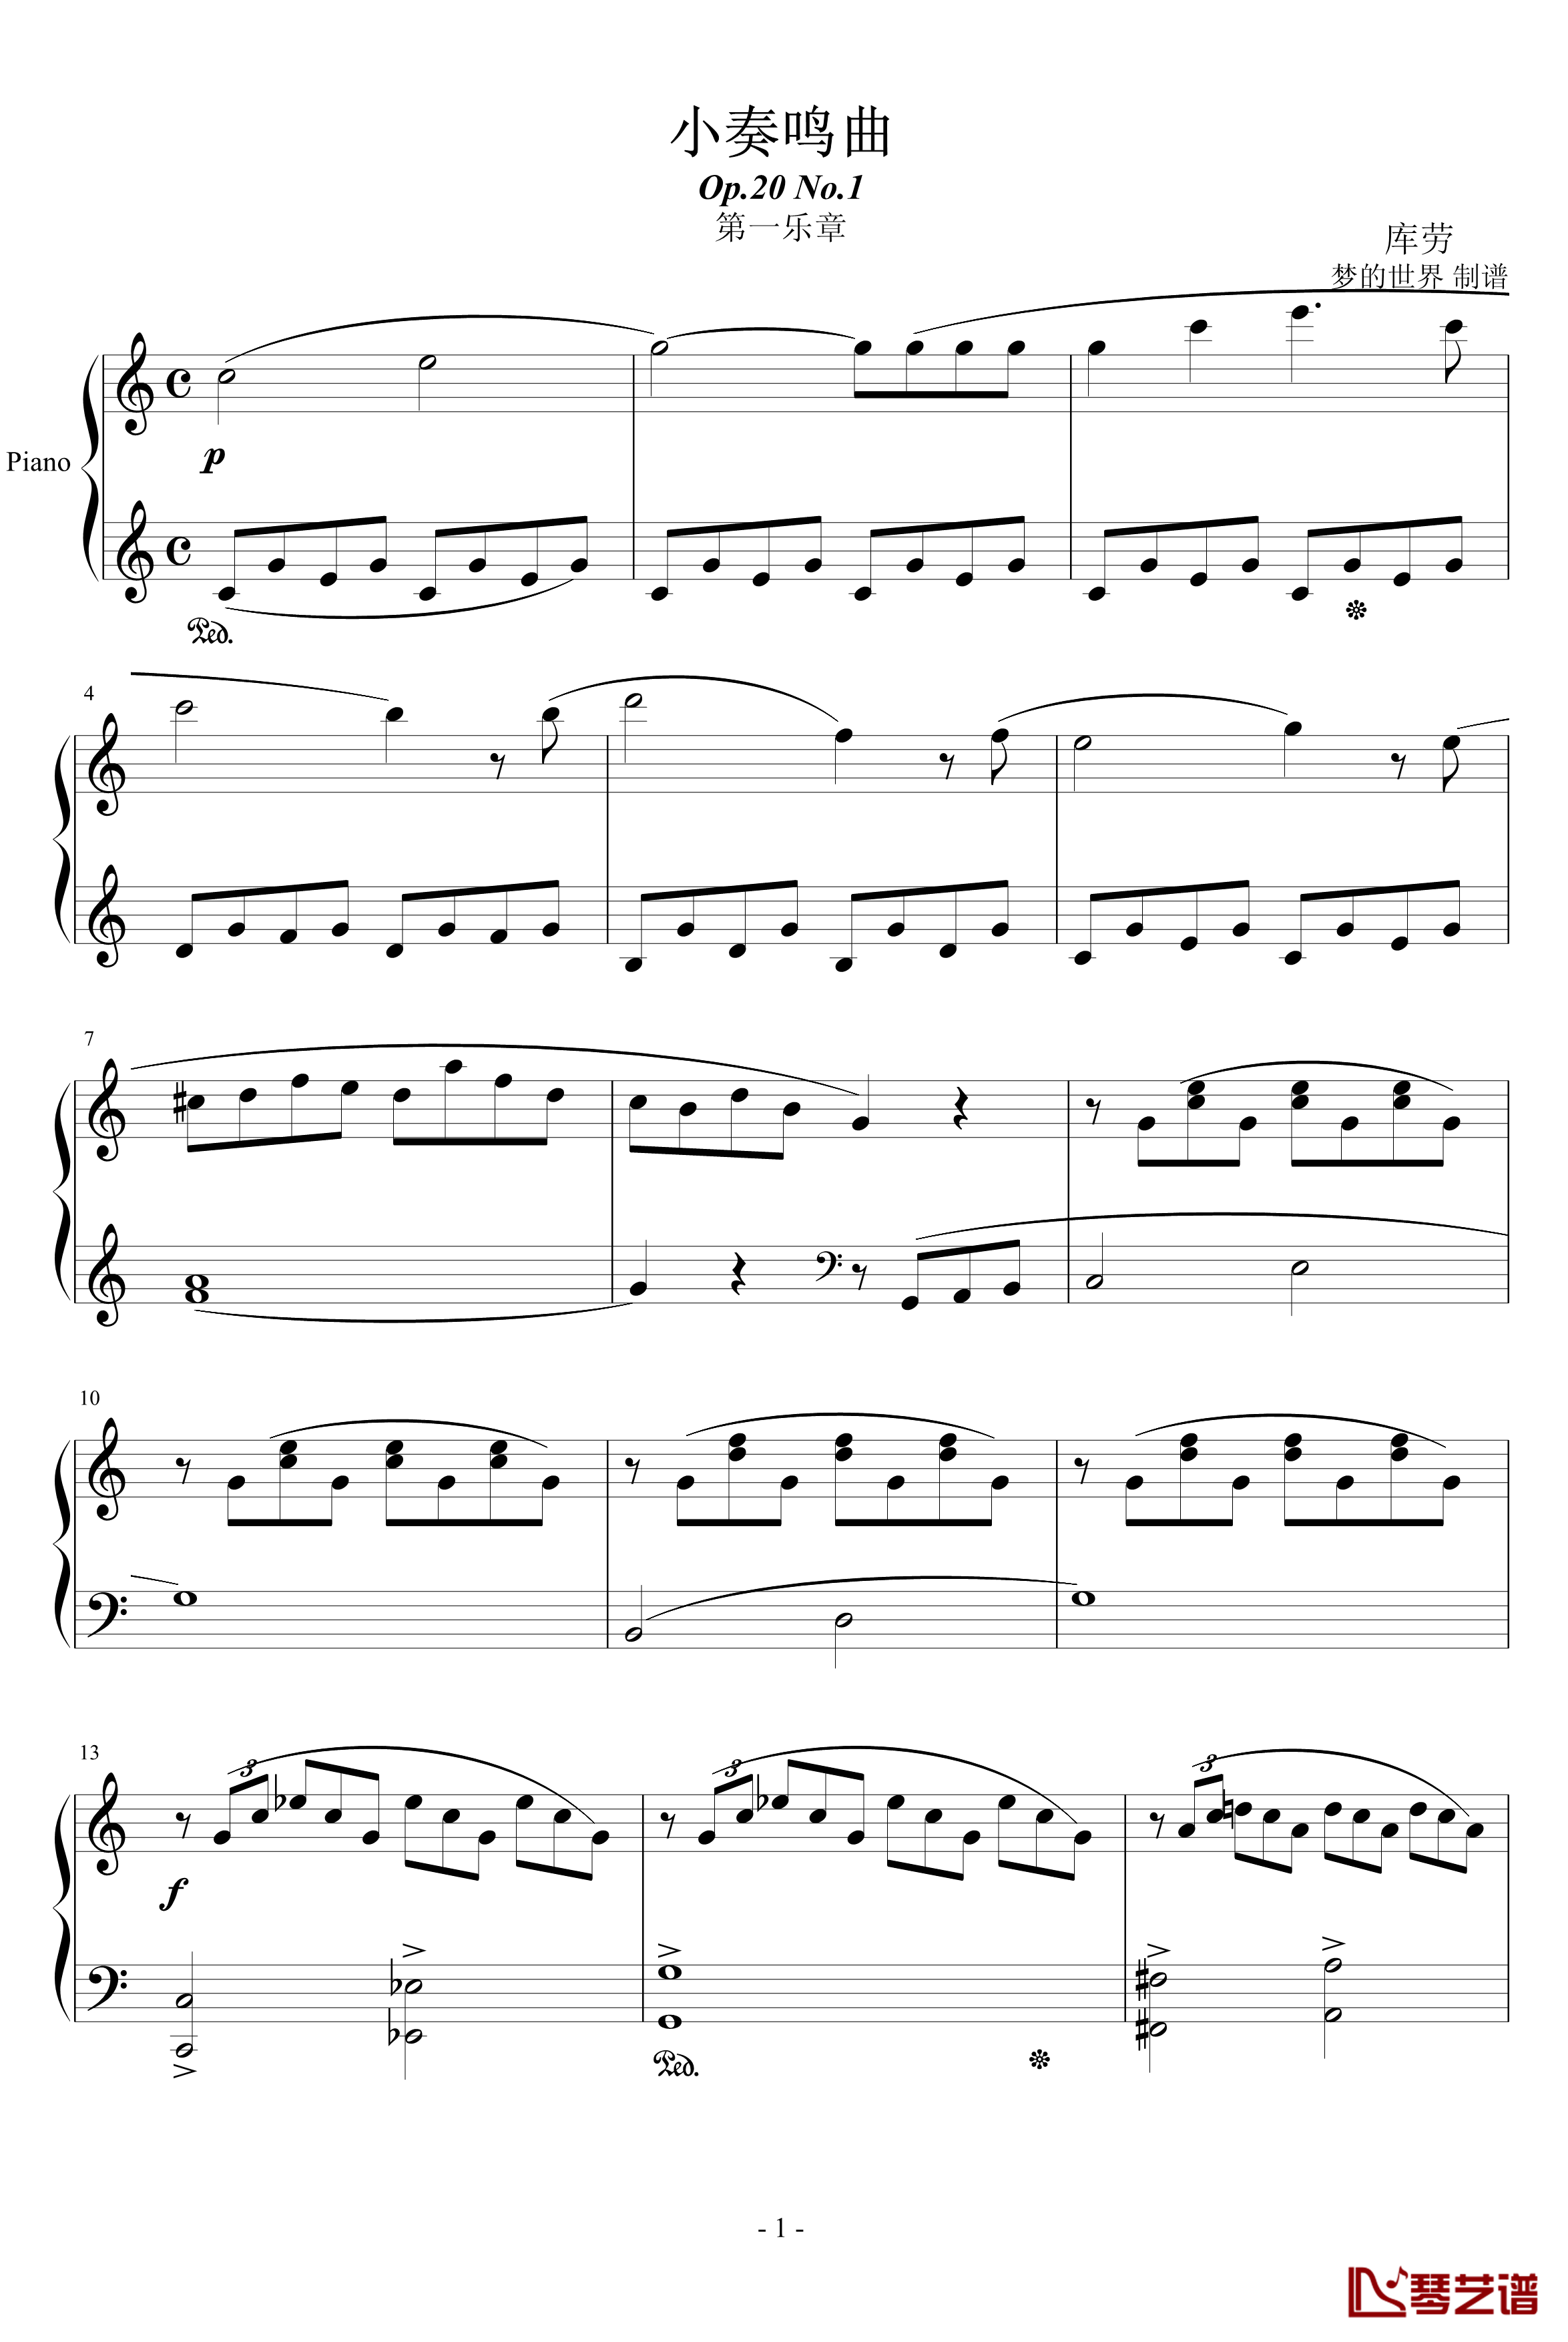 小奏鸣曲钢琴谱-Op20.No.1-库劳1